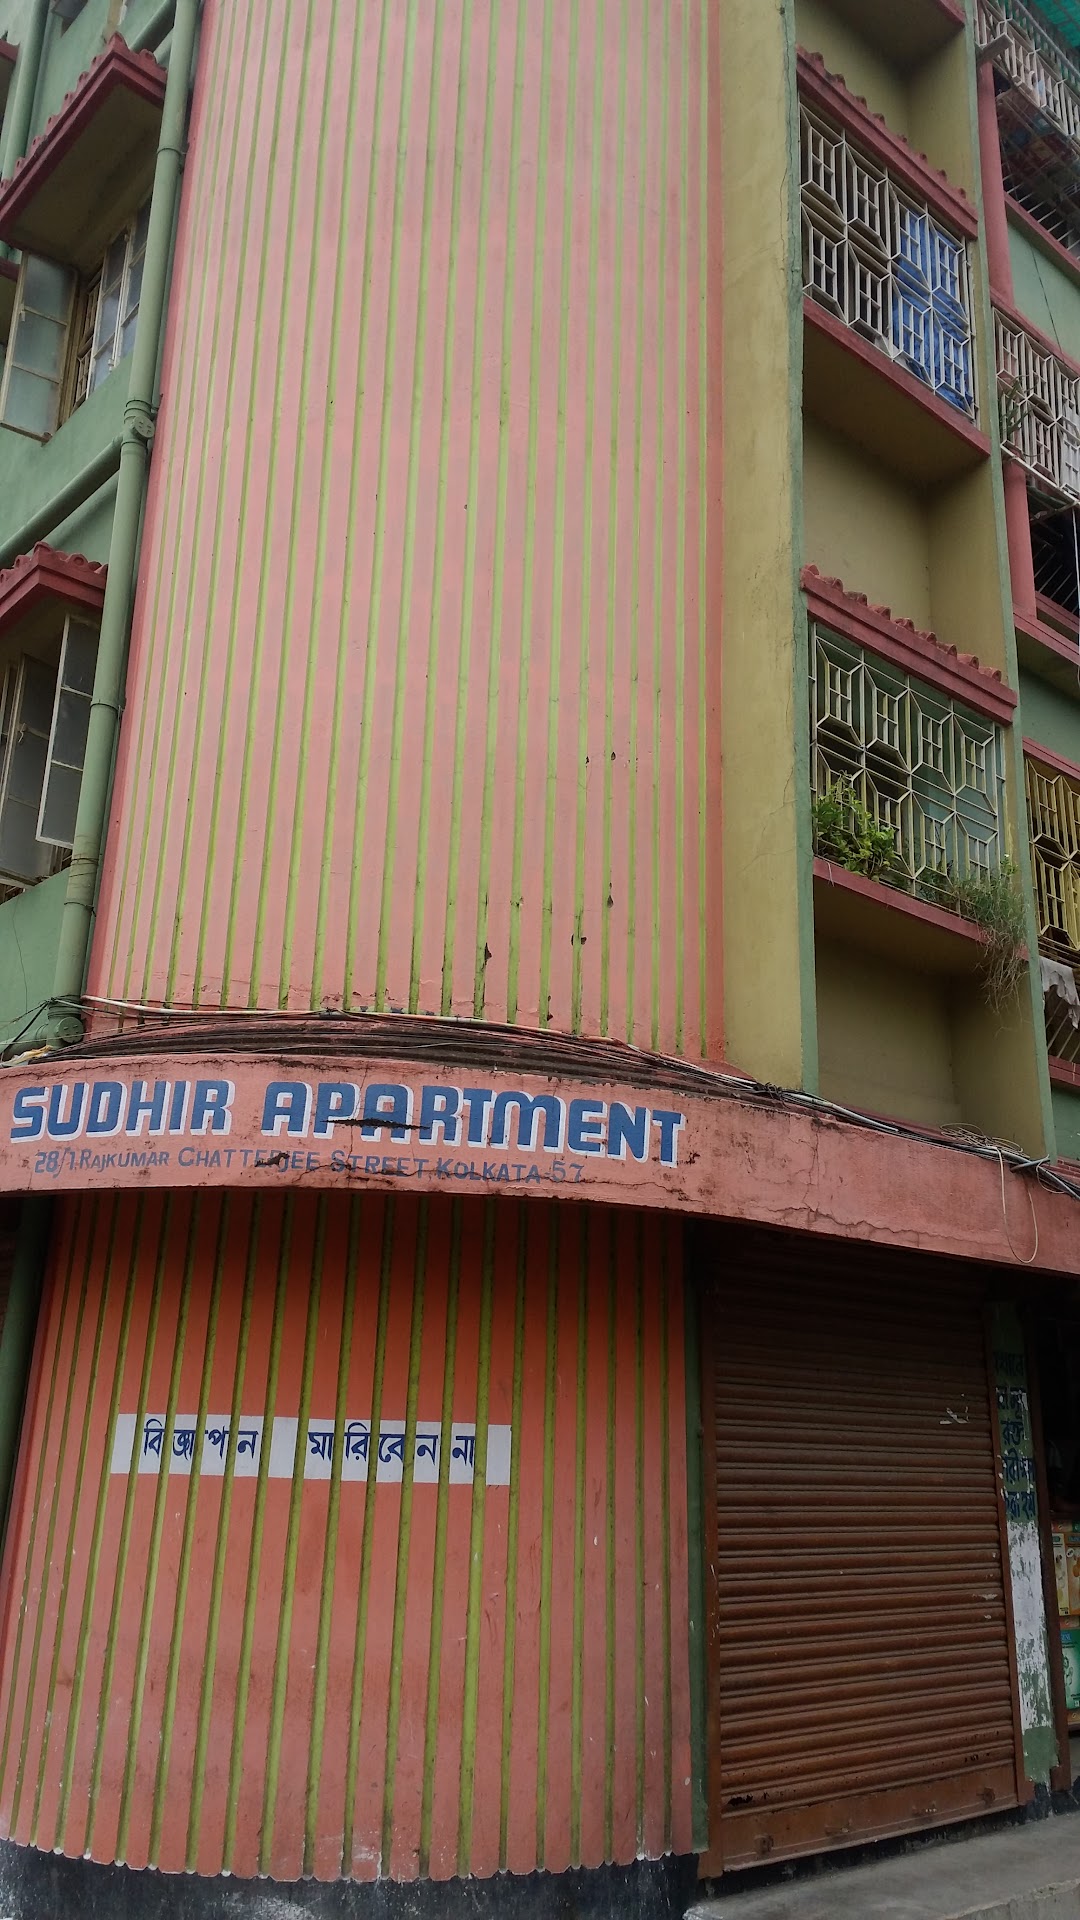 Sudhir apartments